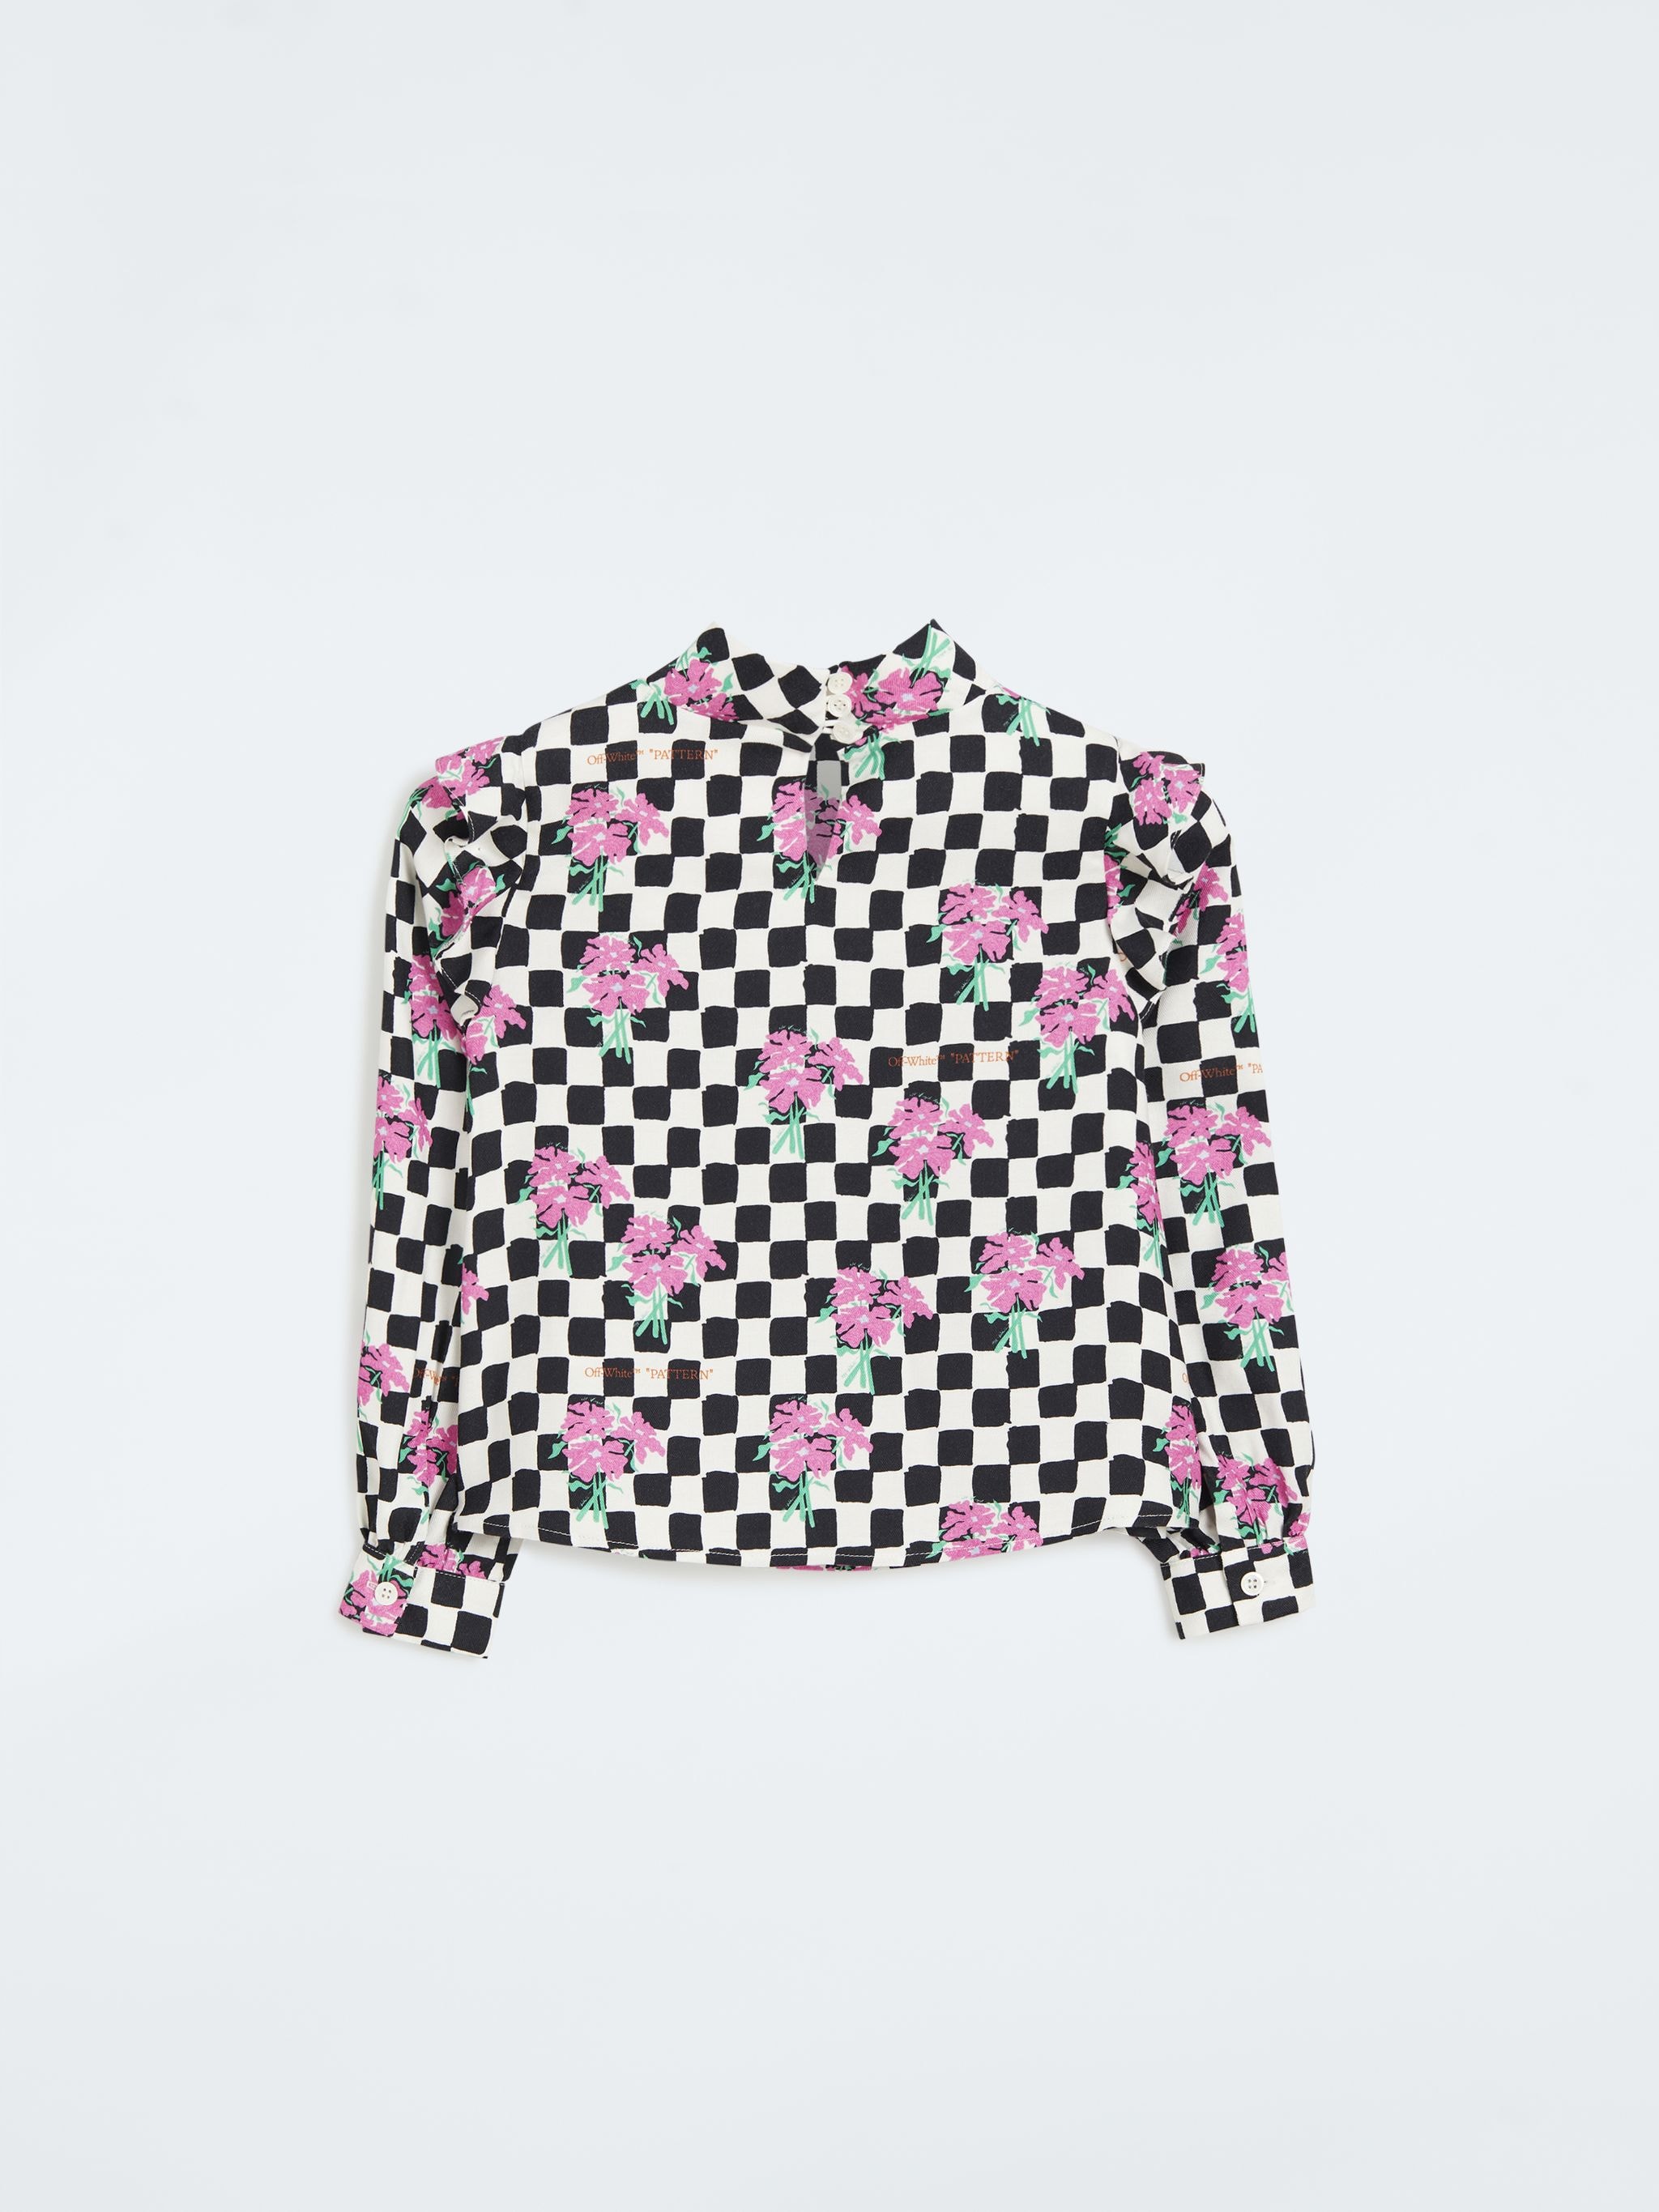 Chessboard Shirt